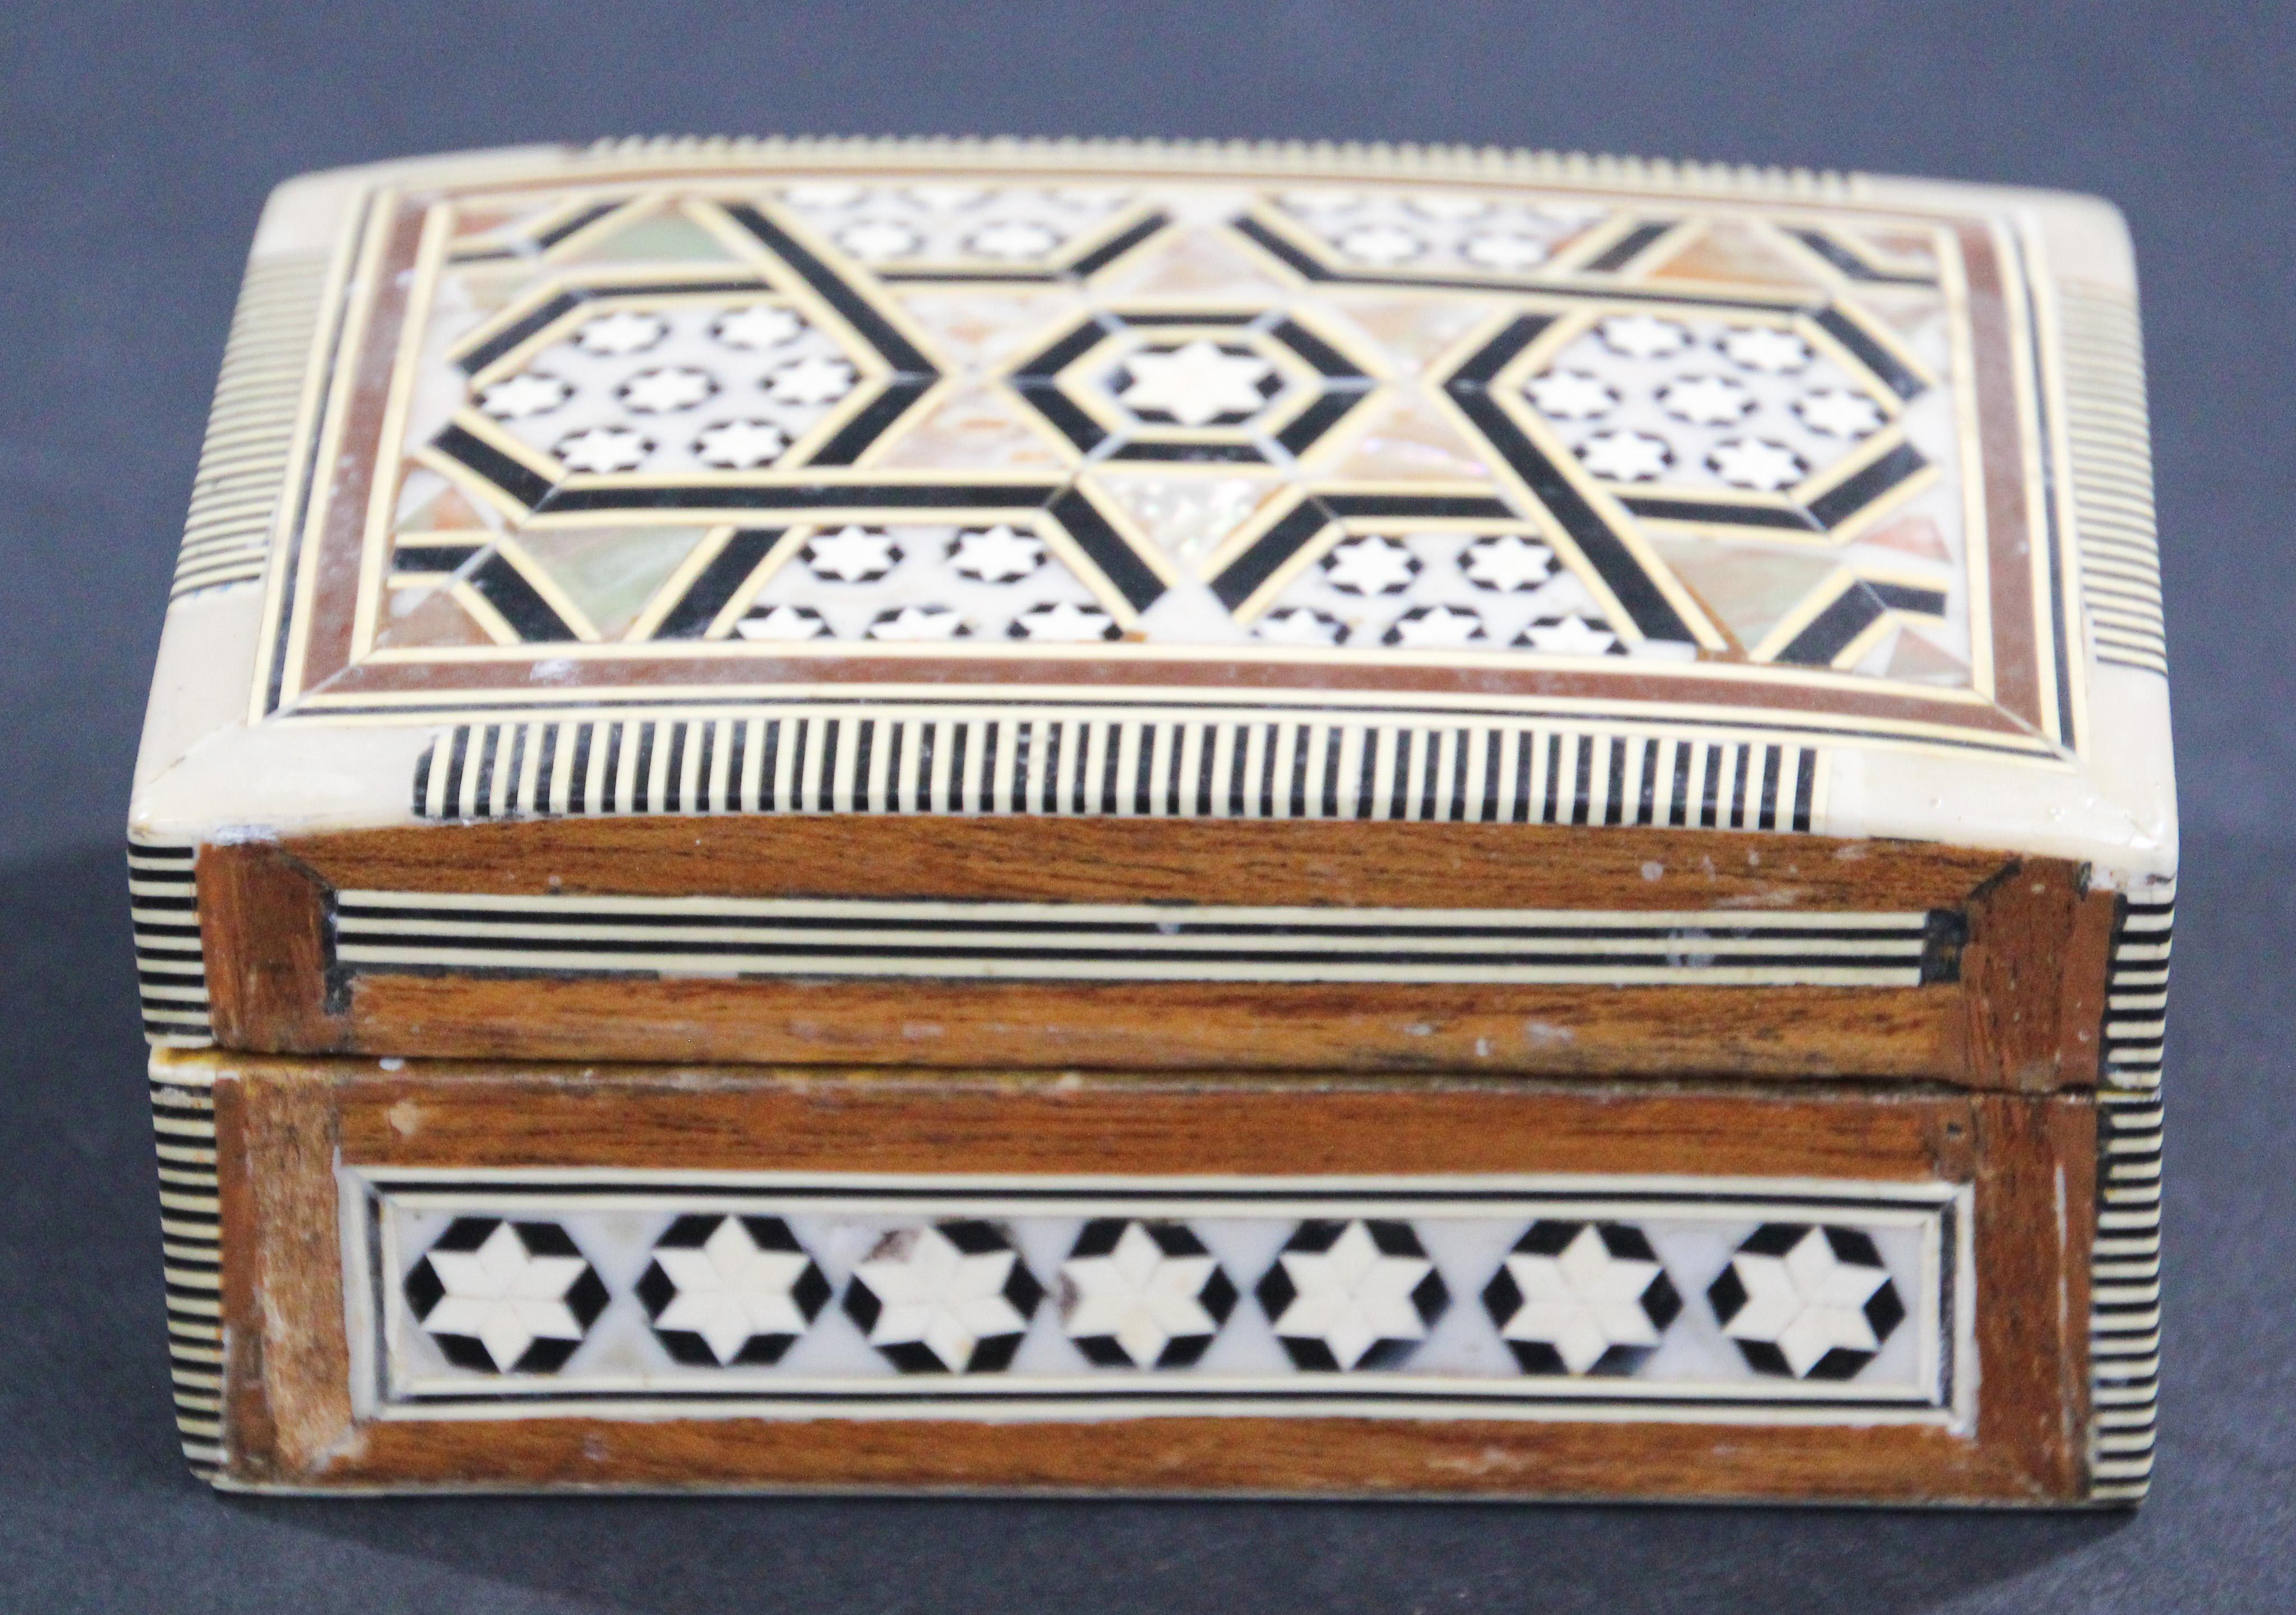 Boîte en bois de noyer incrustée de mosaïques du Moyen-Orient, fabriquée à la main.
Petite boîte décorée de façon complexe de motifs mauresques en forme d'étoile de David qui ont été minutieusement incrustés de marqueterie de mosaïque, de nacre et